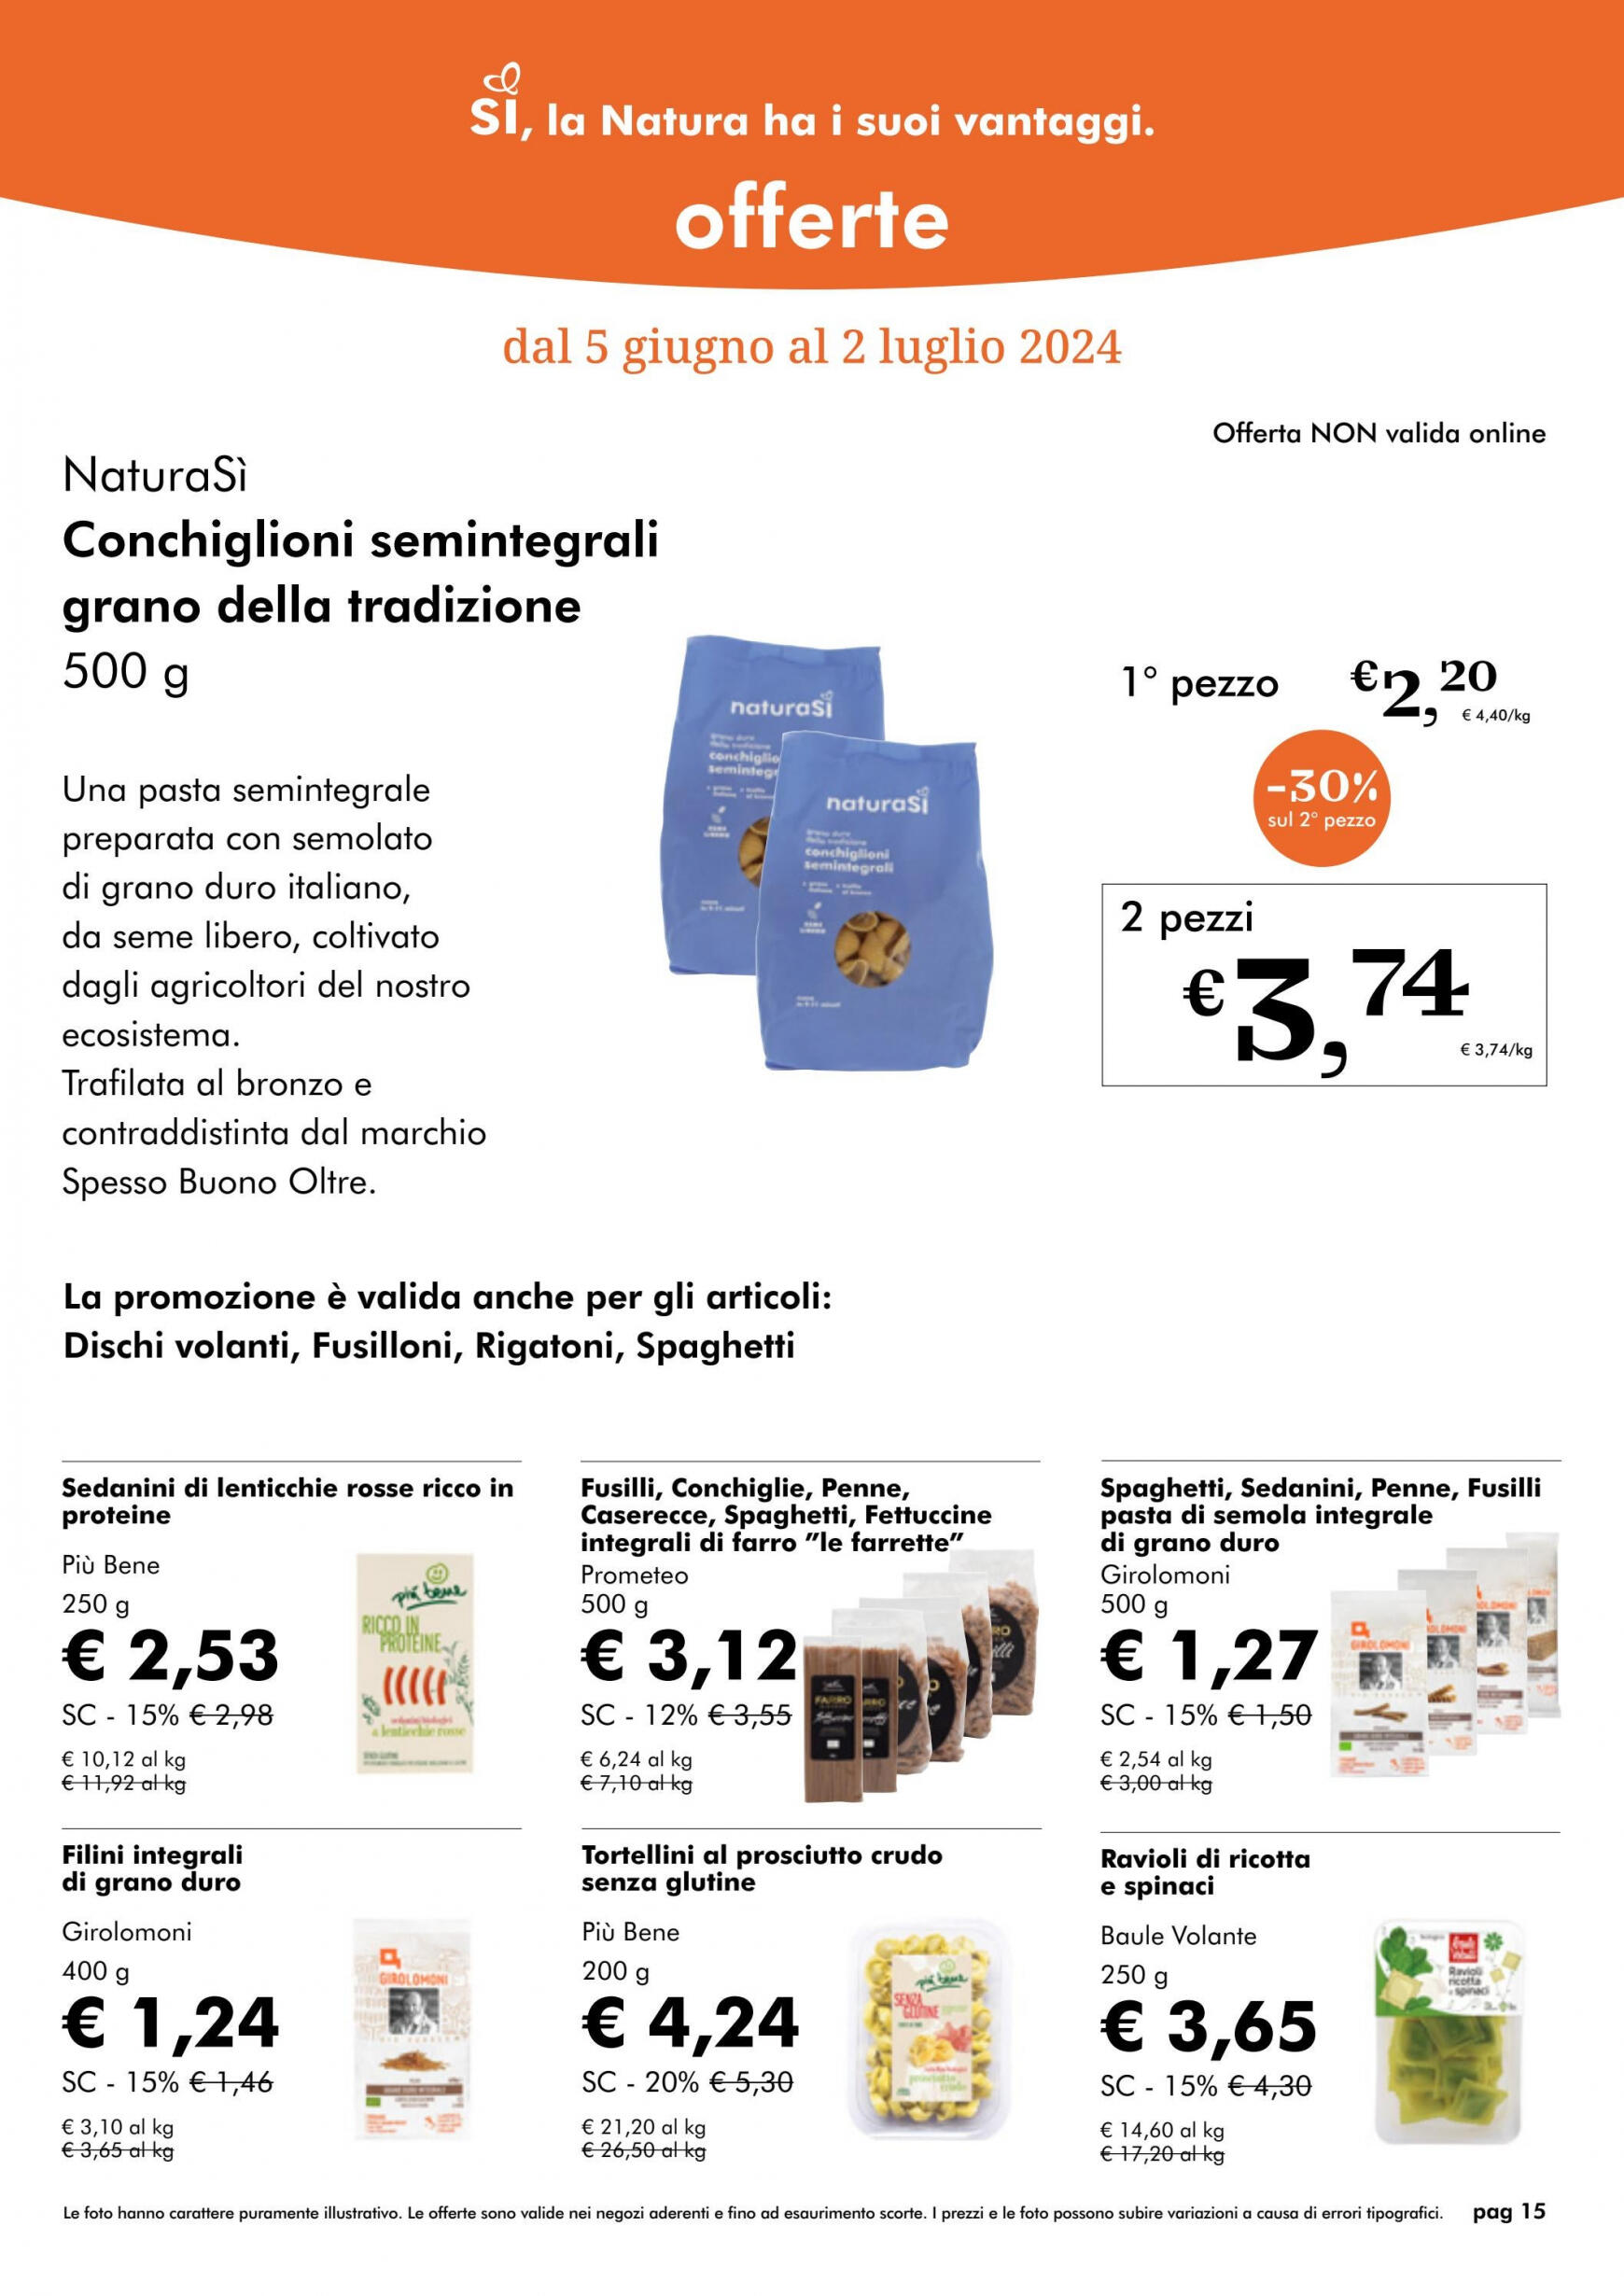 naturasi - Nuovo volantino NaturaSì 01.06. - 30.06. - page: 15